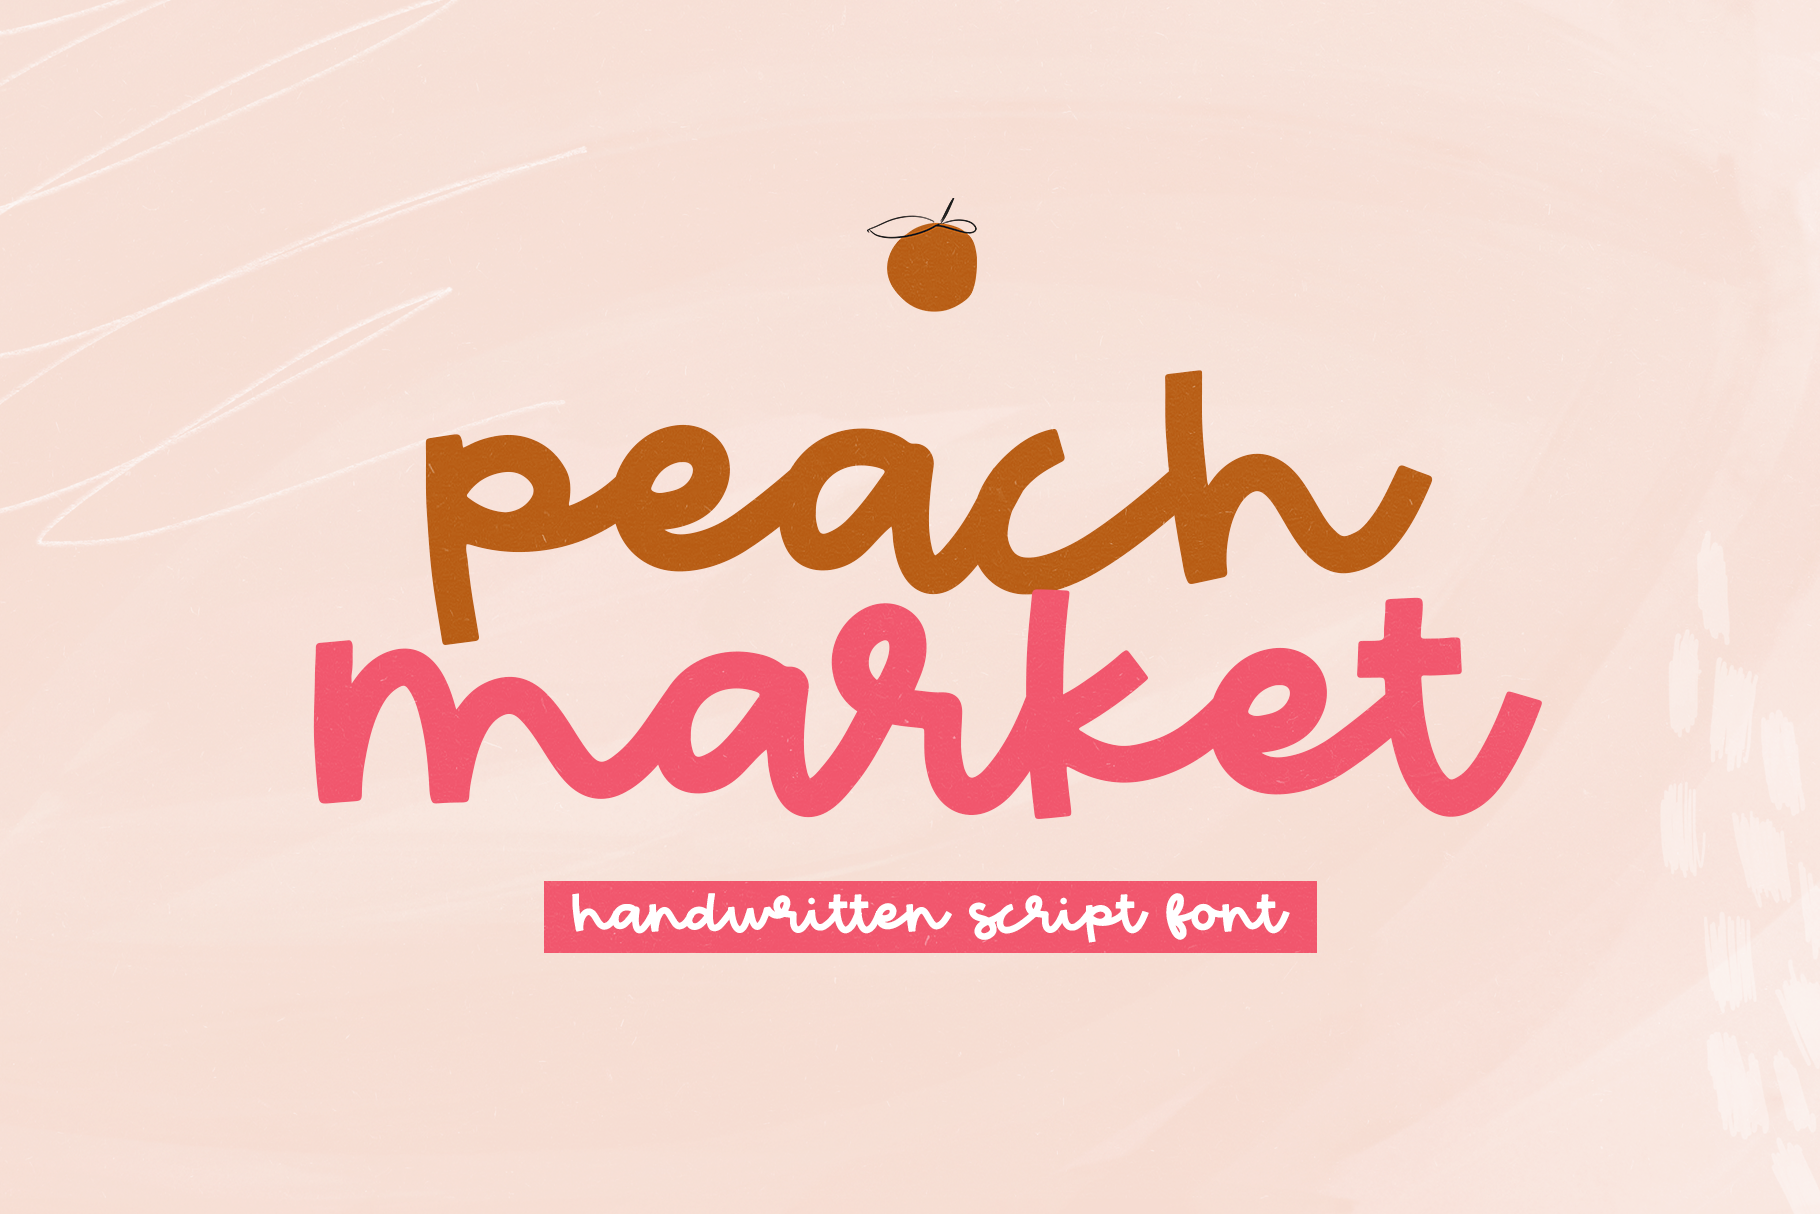 Peach Market Handwritten Script Font By Ka Designs Thehungryjpeg Com